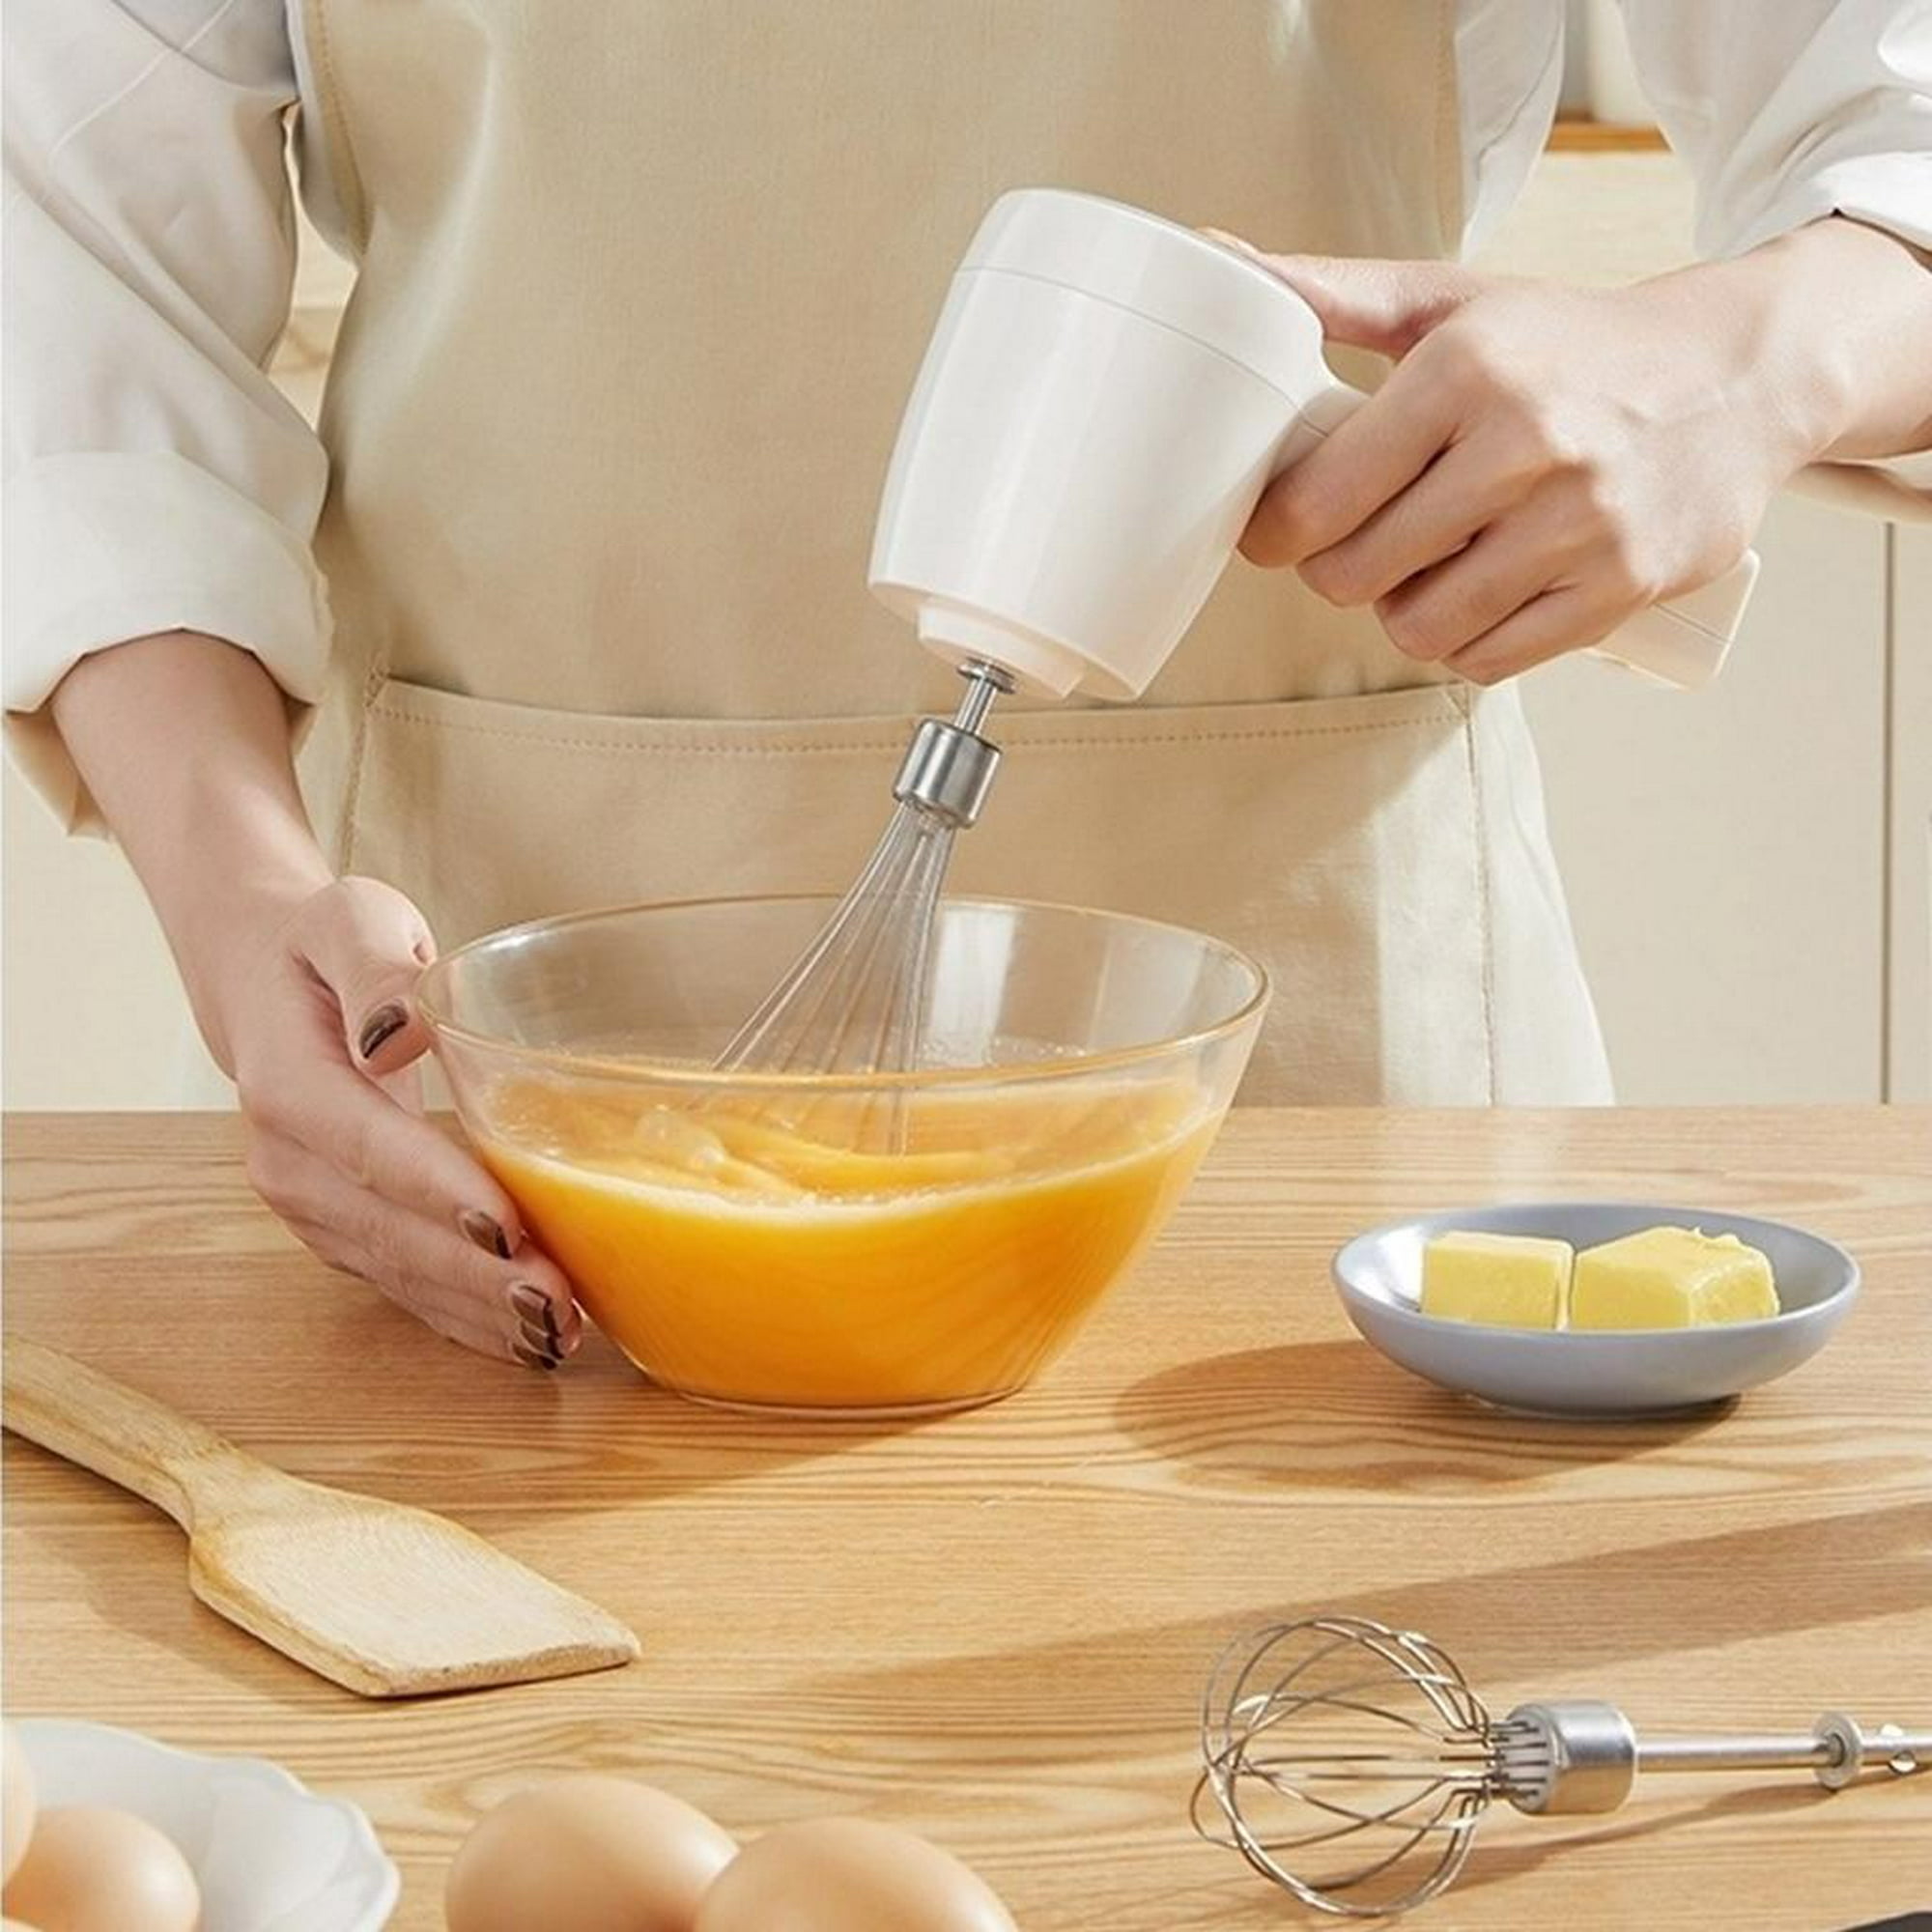 Batidora de mano Batidor de huevos Batidora manual rotativa de acero  inoxidable Utensilios de cocina